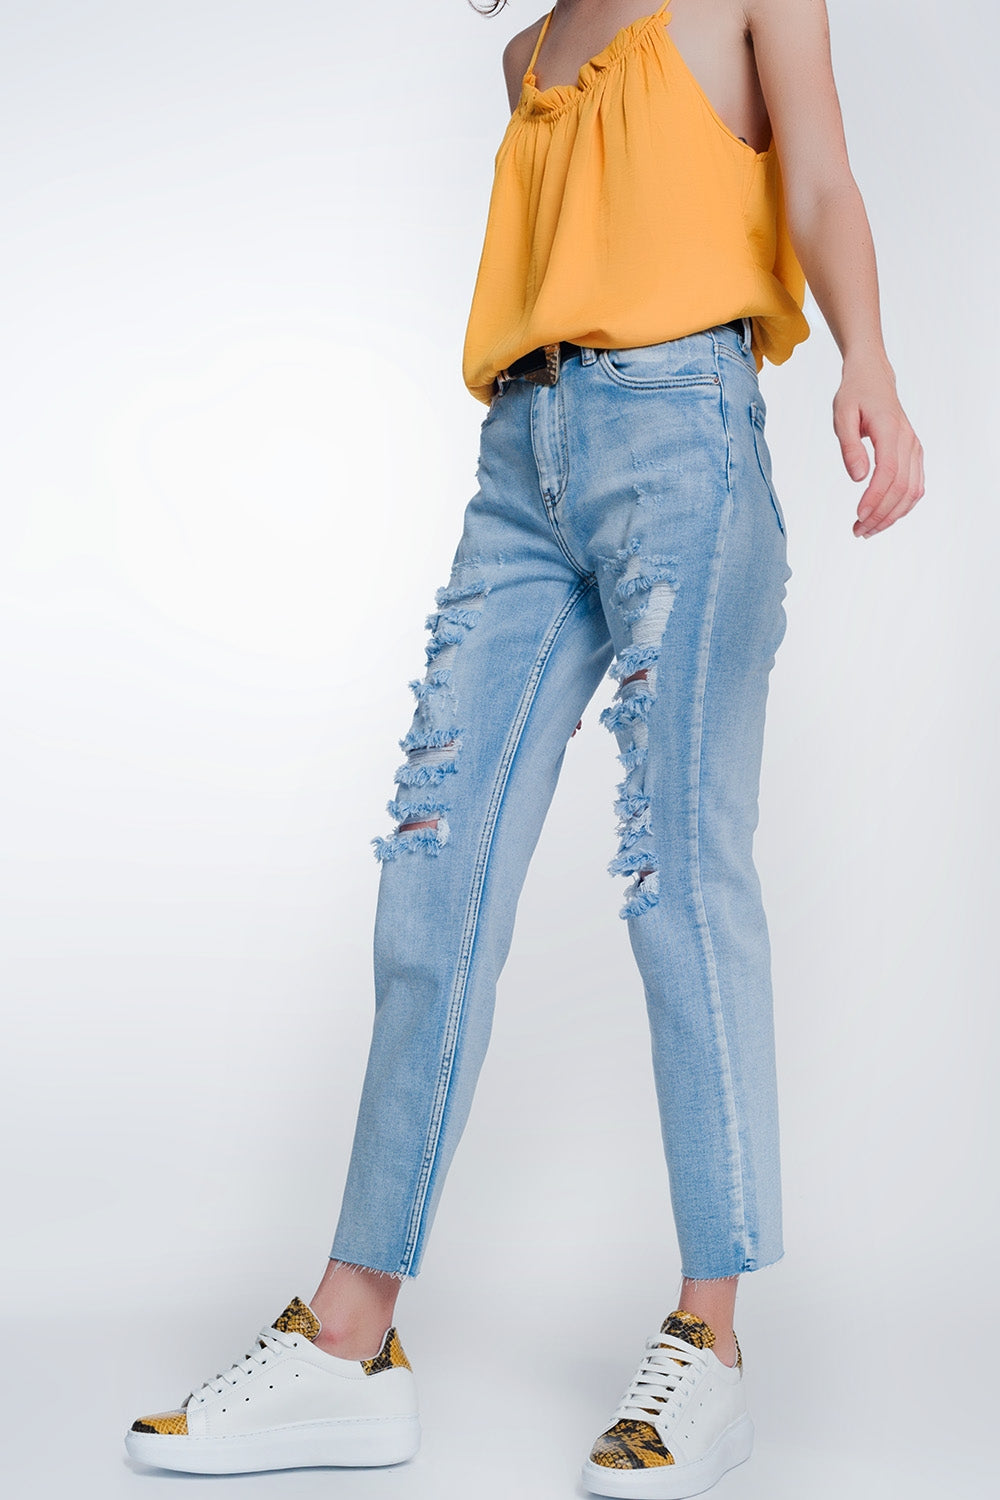 wide leg cropped raw hem jeans in blue colourJeans